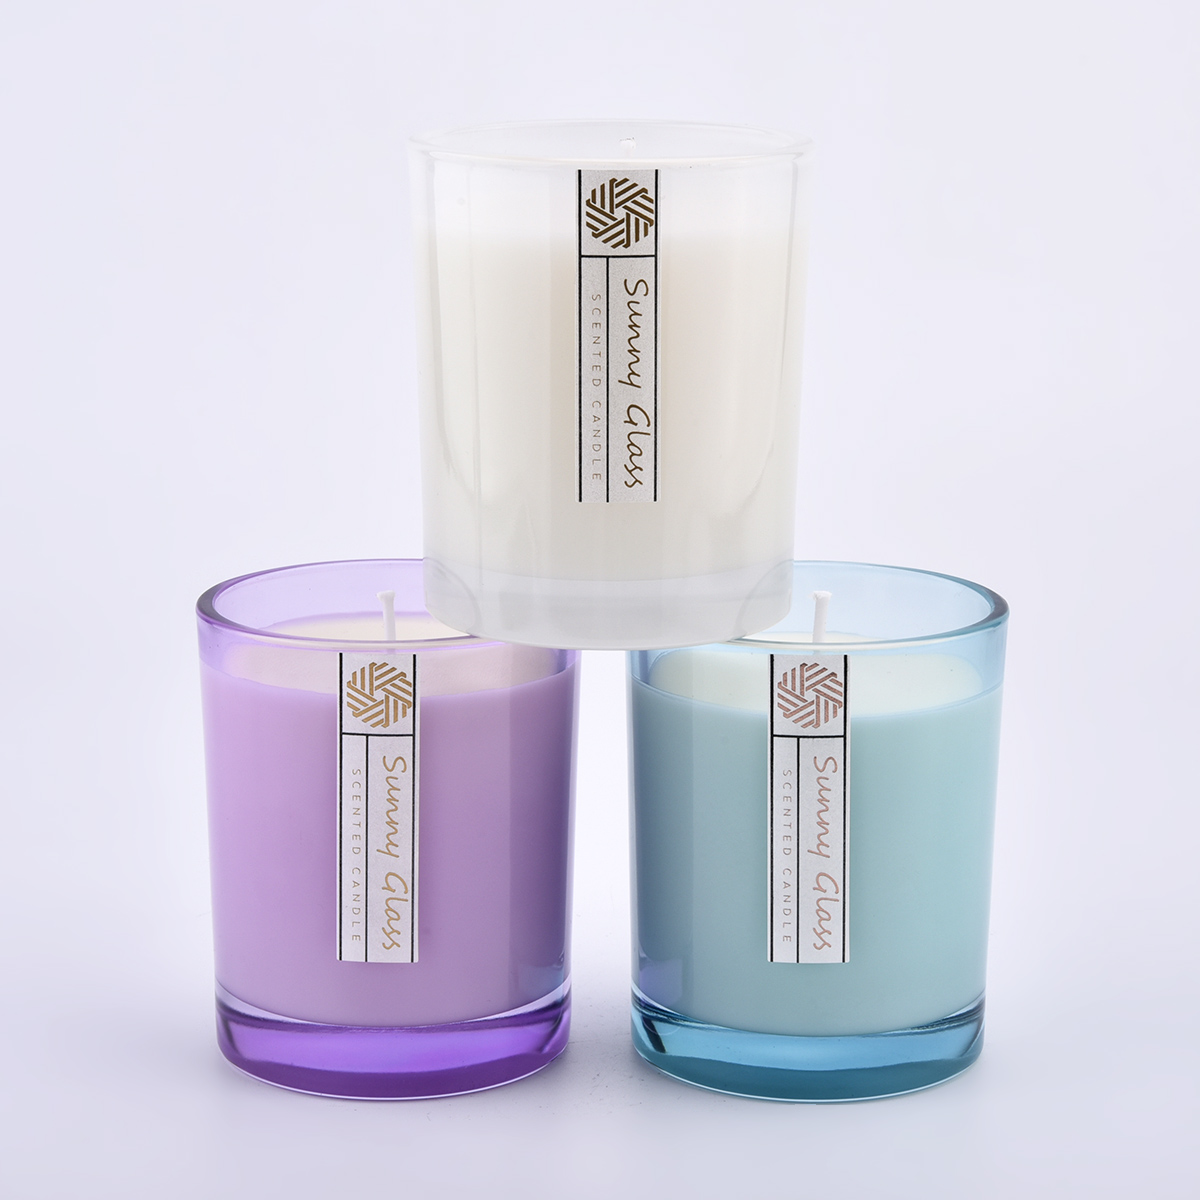 Frascos de vela de cristal en color y etiquetas transparentes personalizadas.